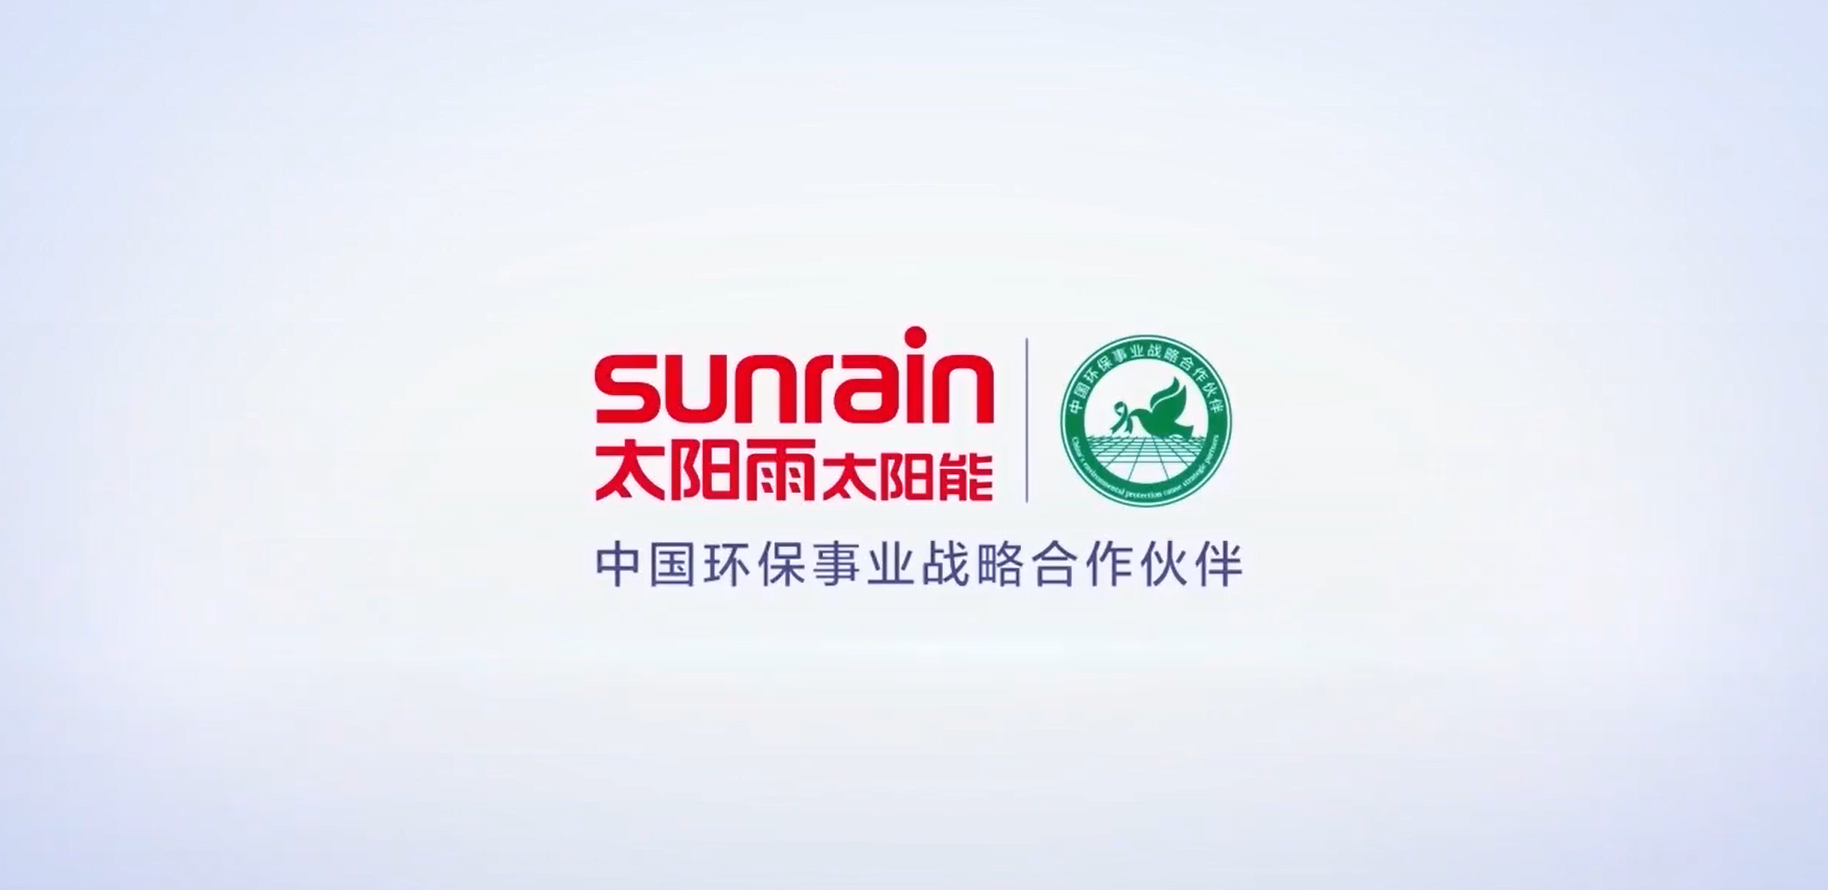 太阳雨-中国环保事业战略合作伙伴